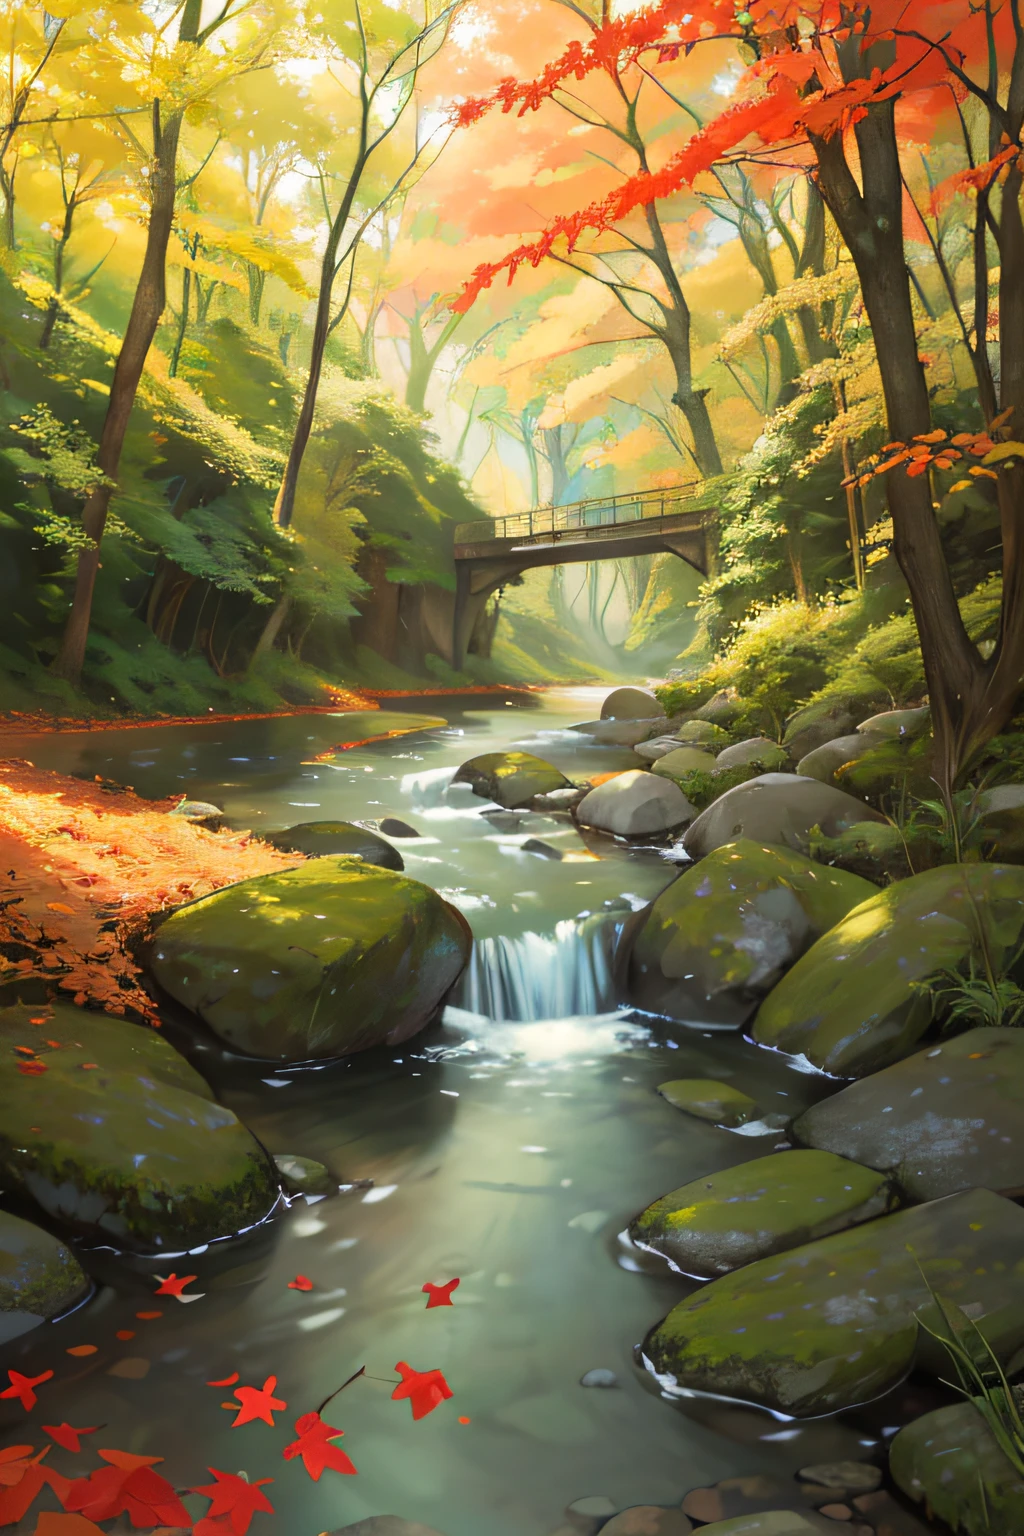 森 小川 川 精霊 美しい光 葉 自然の美しさ 不思議 魔法 赤い葉 黄色い葉 緑の森 光の効果 神秘的な雰囲気 水面 川の岩 影 構成 異世界の体験